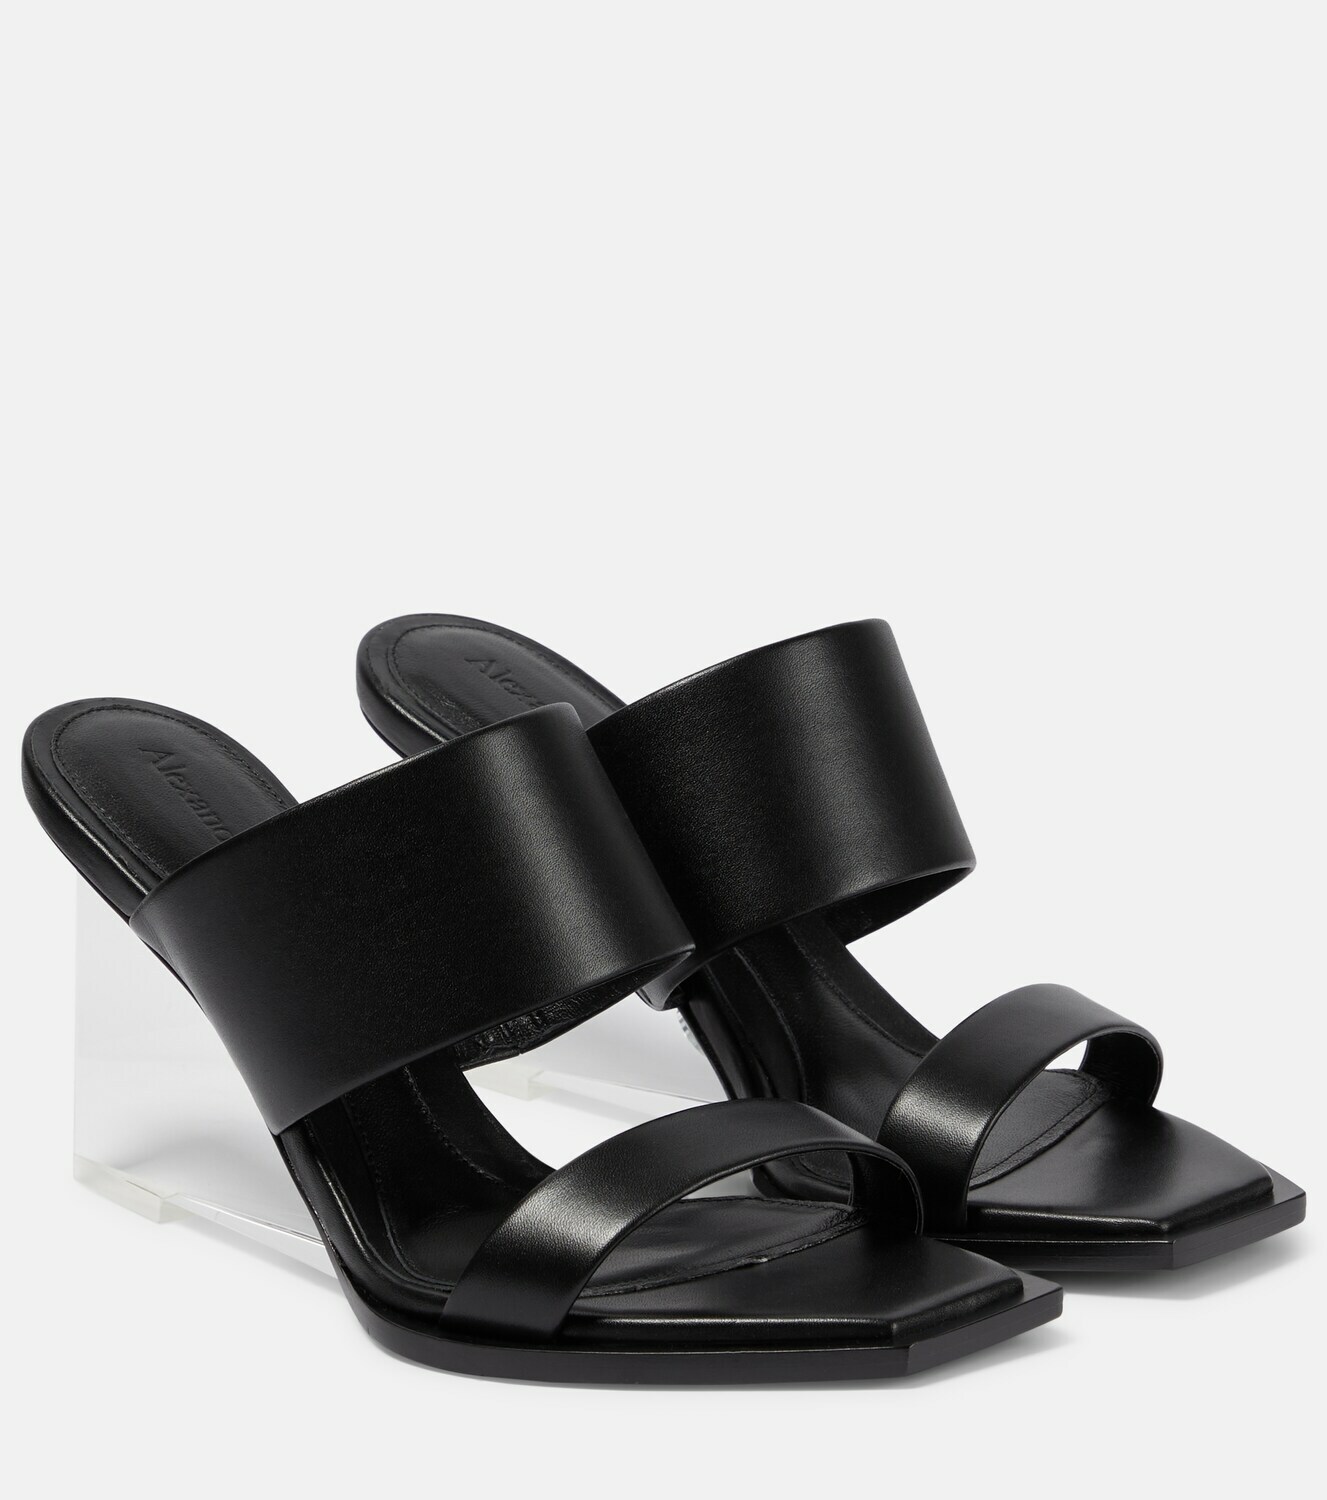 Alexander McQueen - Shard wedge leather sandals Alexander McQueen